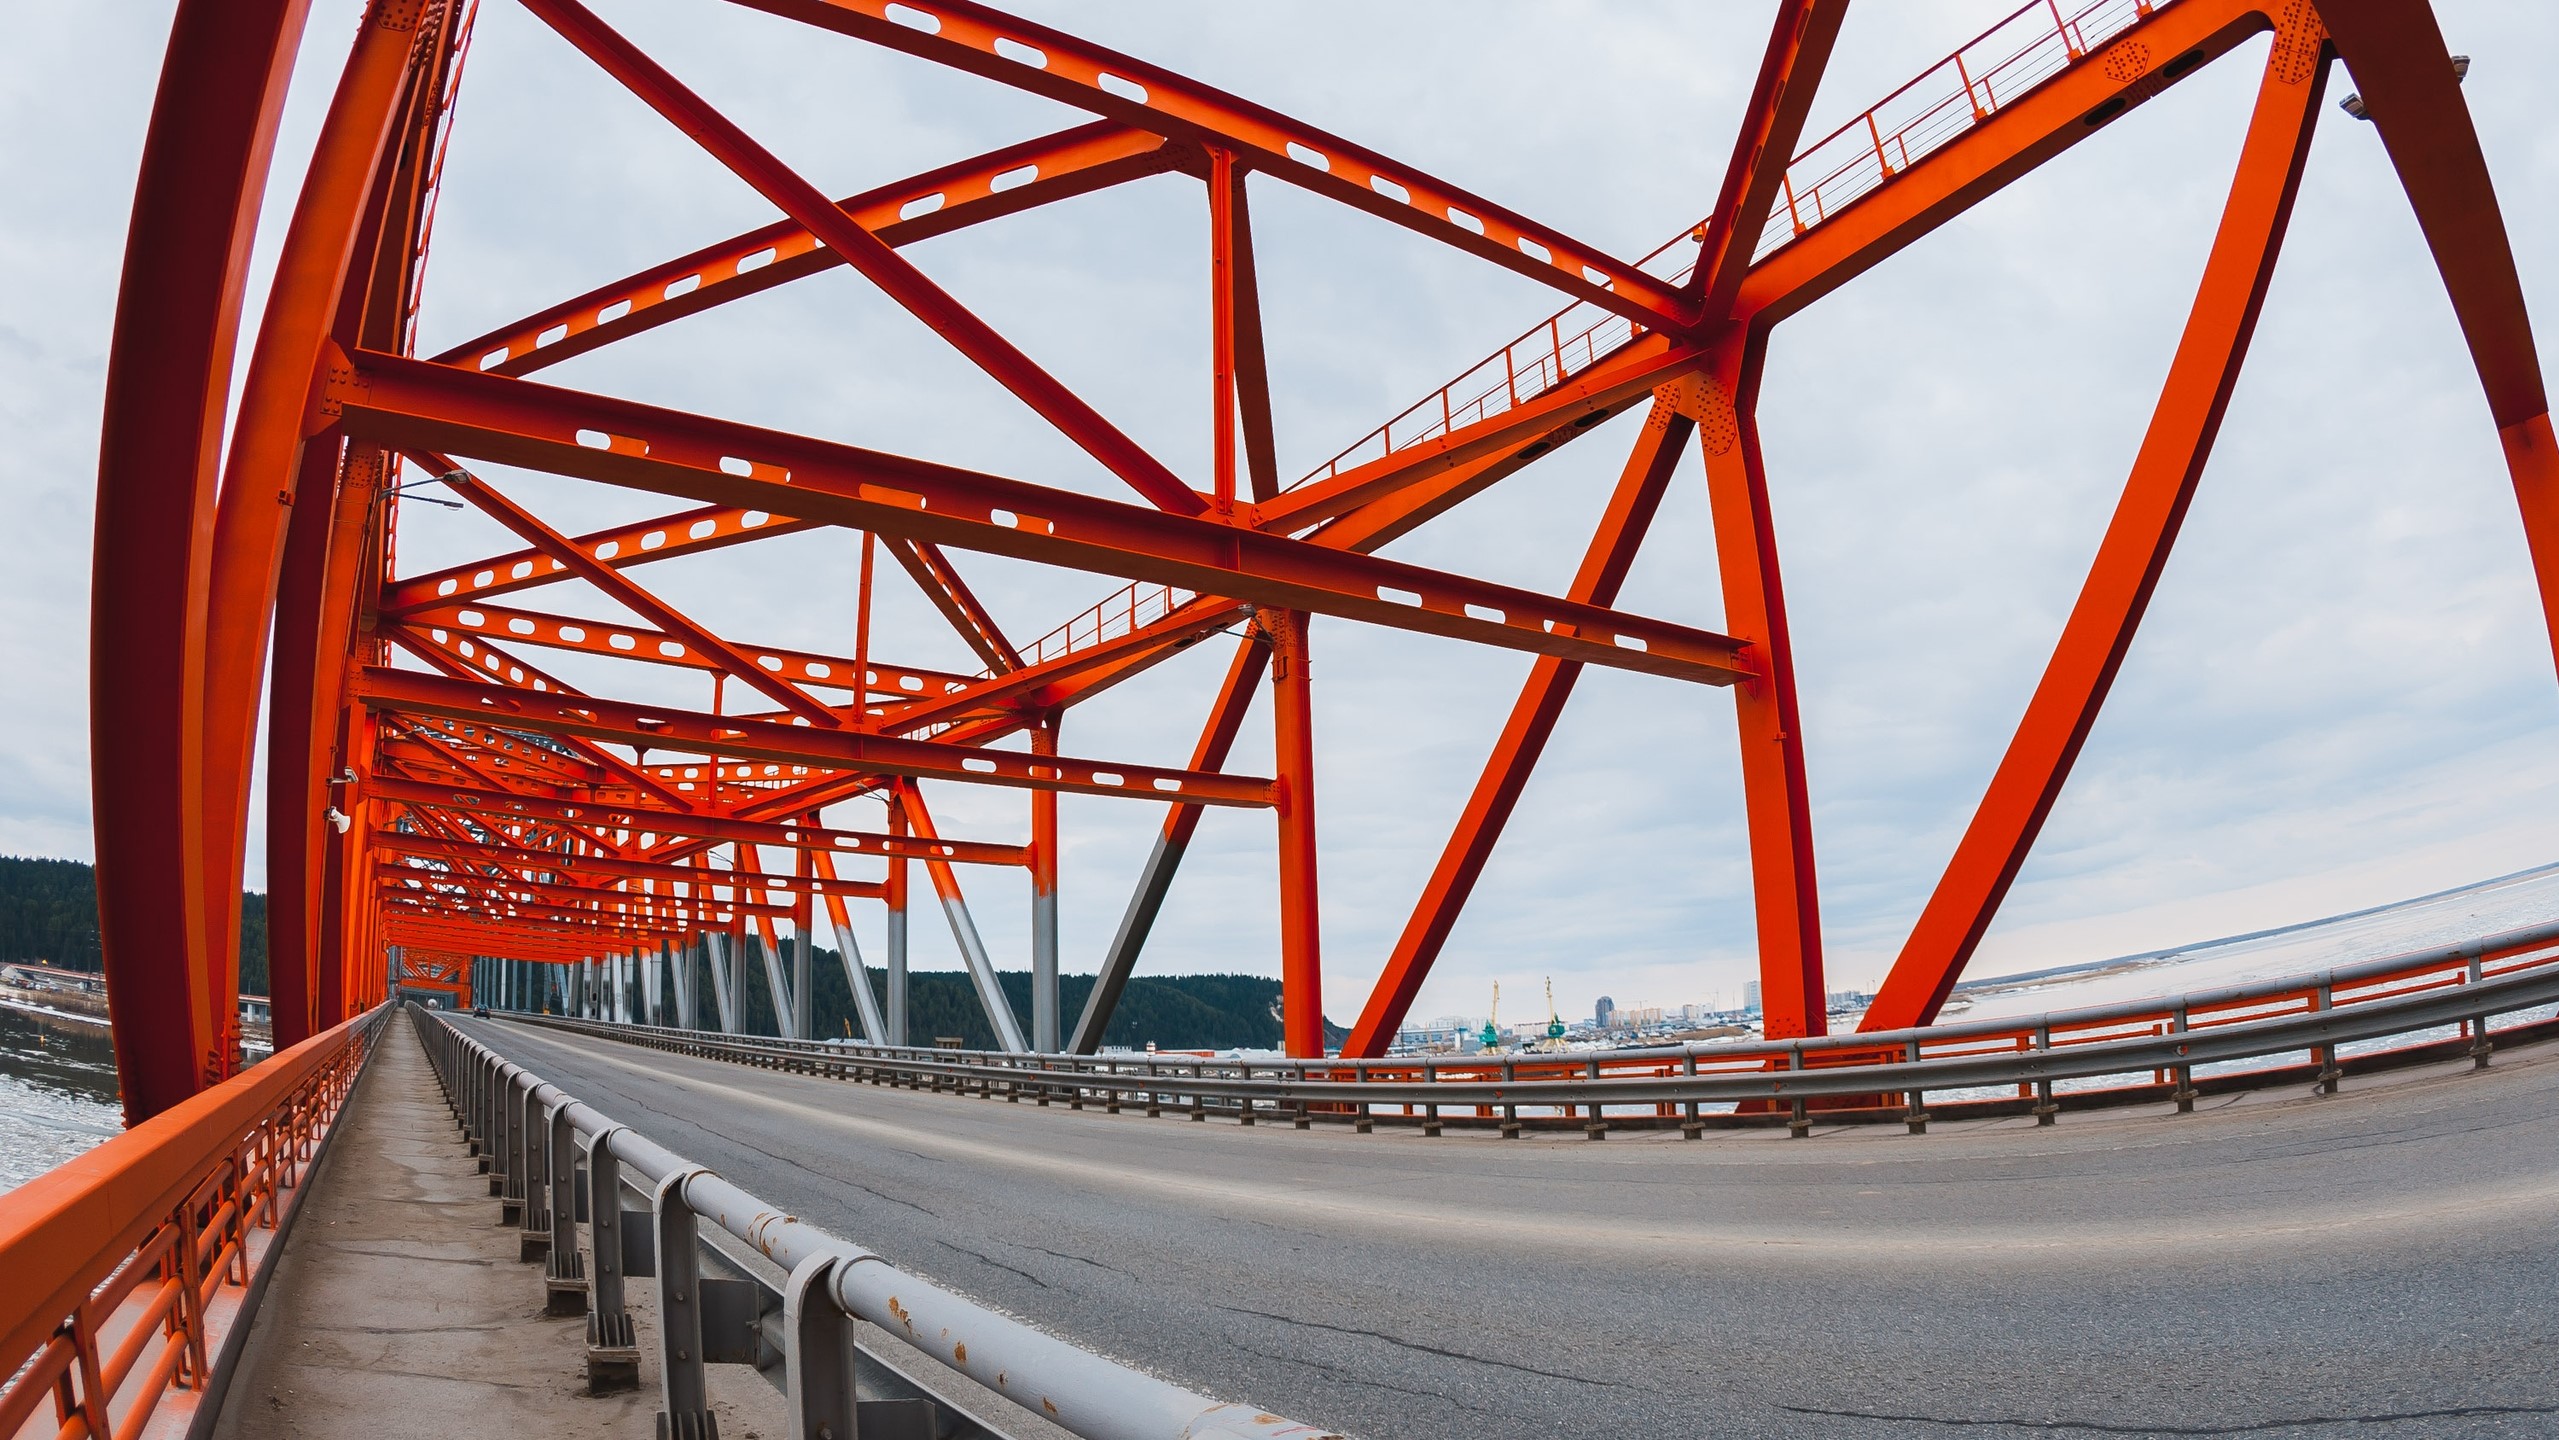 Мост в ханты мансийске сколько металла ушло. Мост красный дракон в Ханты-Мансийске. Мост красный дракон в Ханты-Мансийске фото. Горка закрытая красная. Место где стоит мост красный дракон без моста Ханты Мансийск.